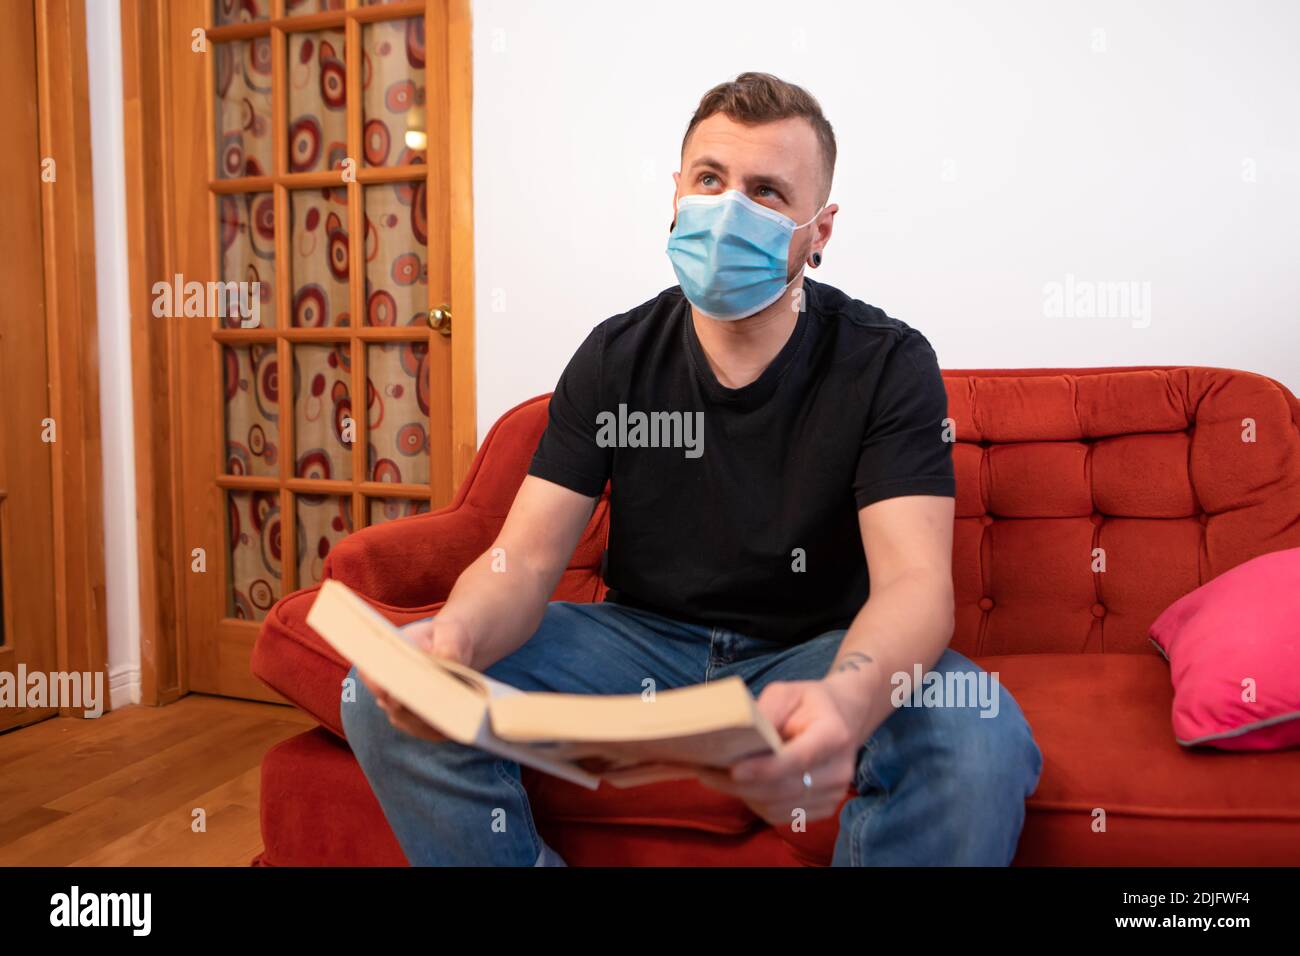 Übertriebene Covid-Prävention. Mann liest ein Buch auf einer roten Couch, trägt eine schützende Sanitär-Maske gegen covid und schaut mit lustigen Ausdruck Stockfoto